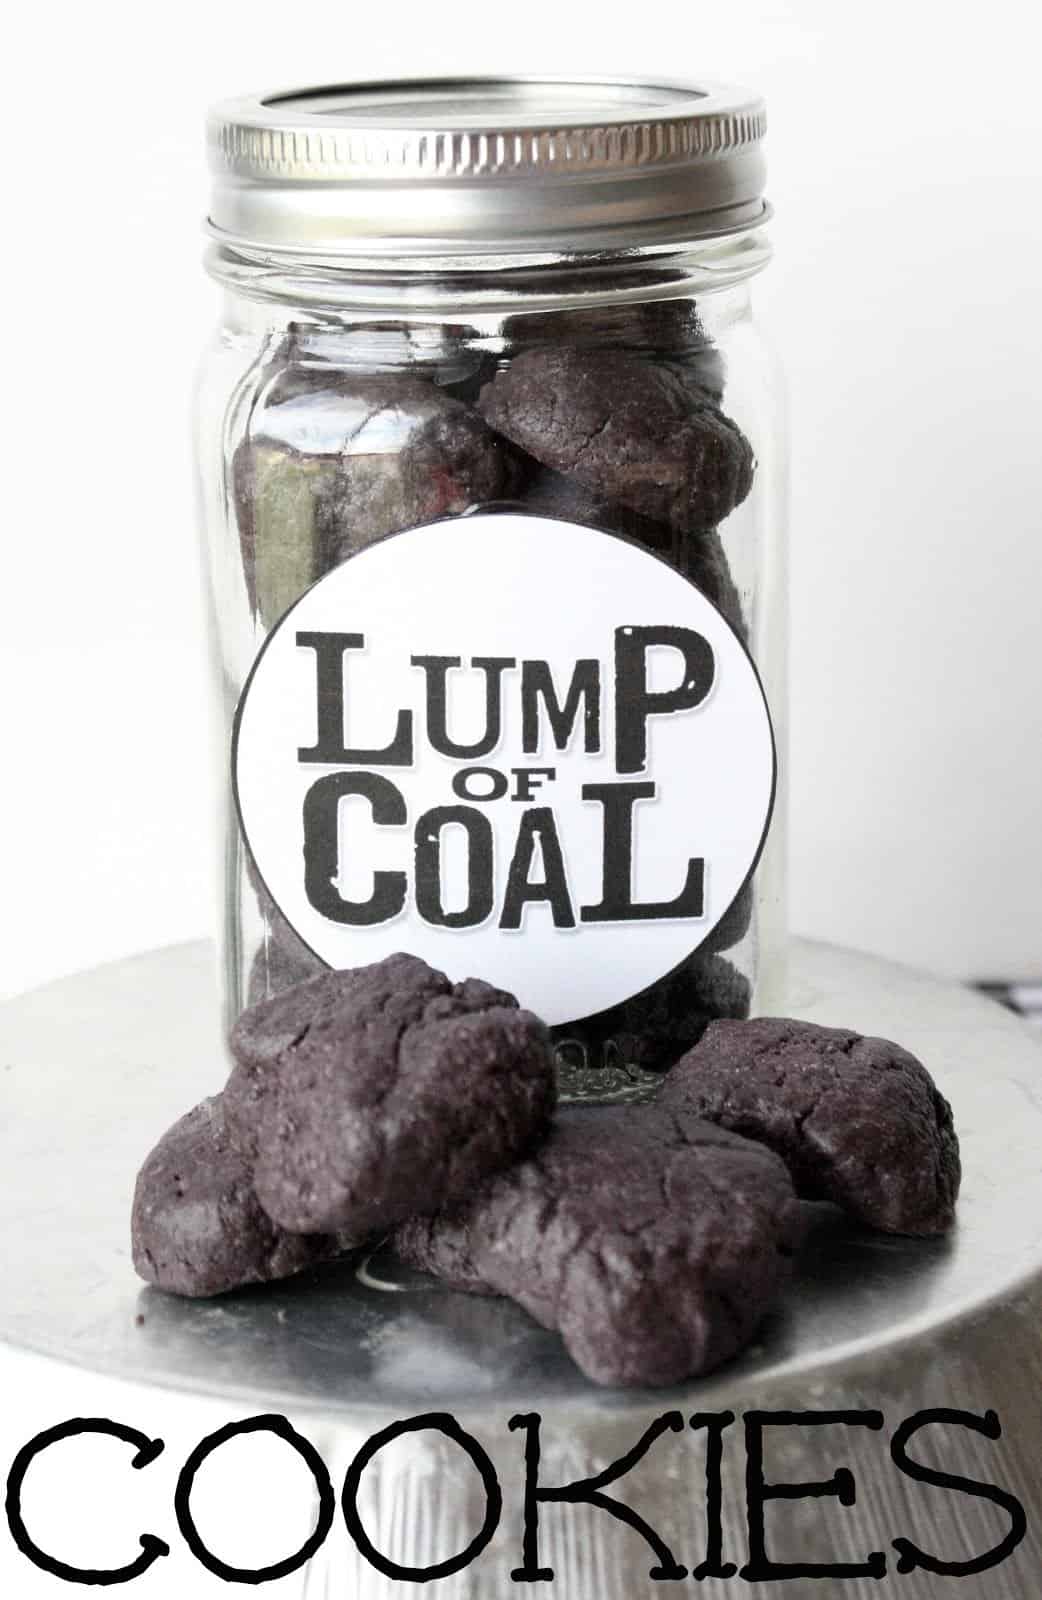 Lump of coal cookies in a jar